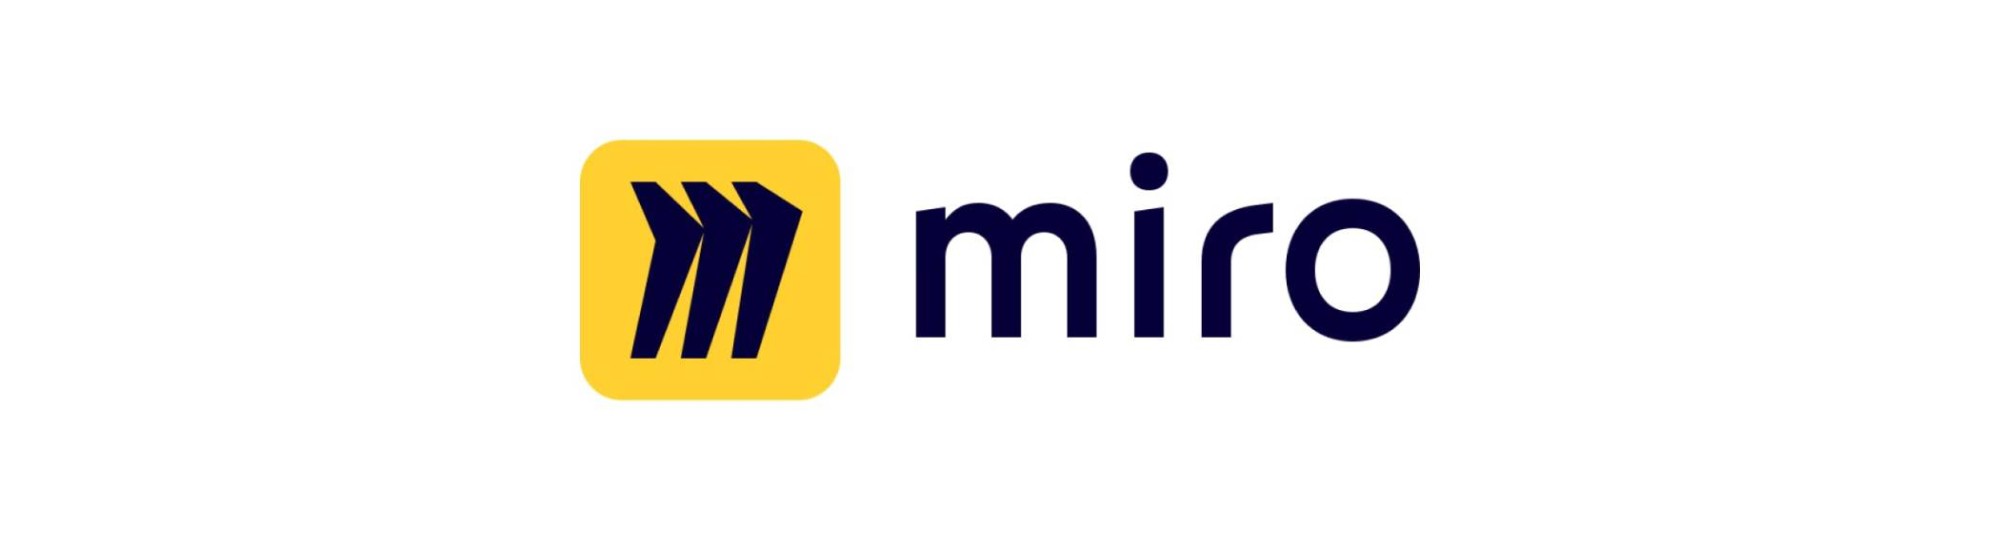 Logo van Miro met symbool en naam